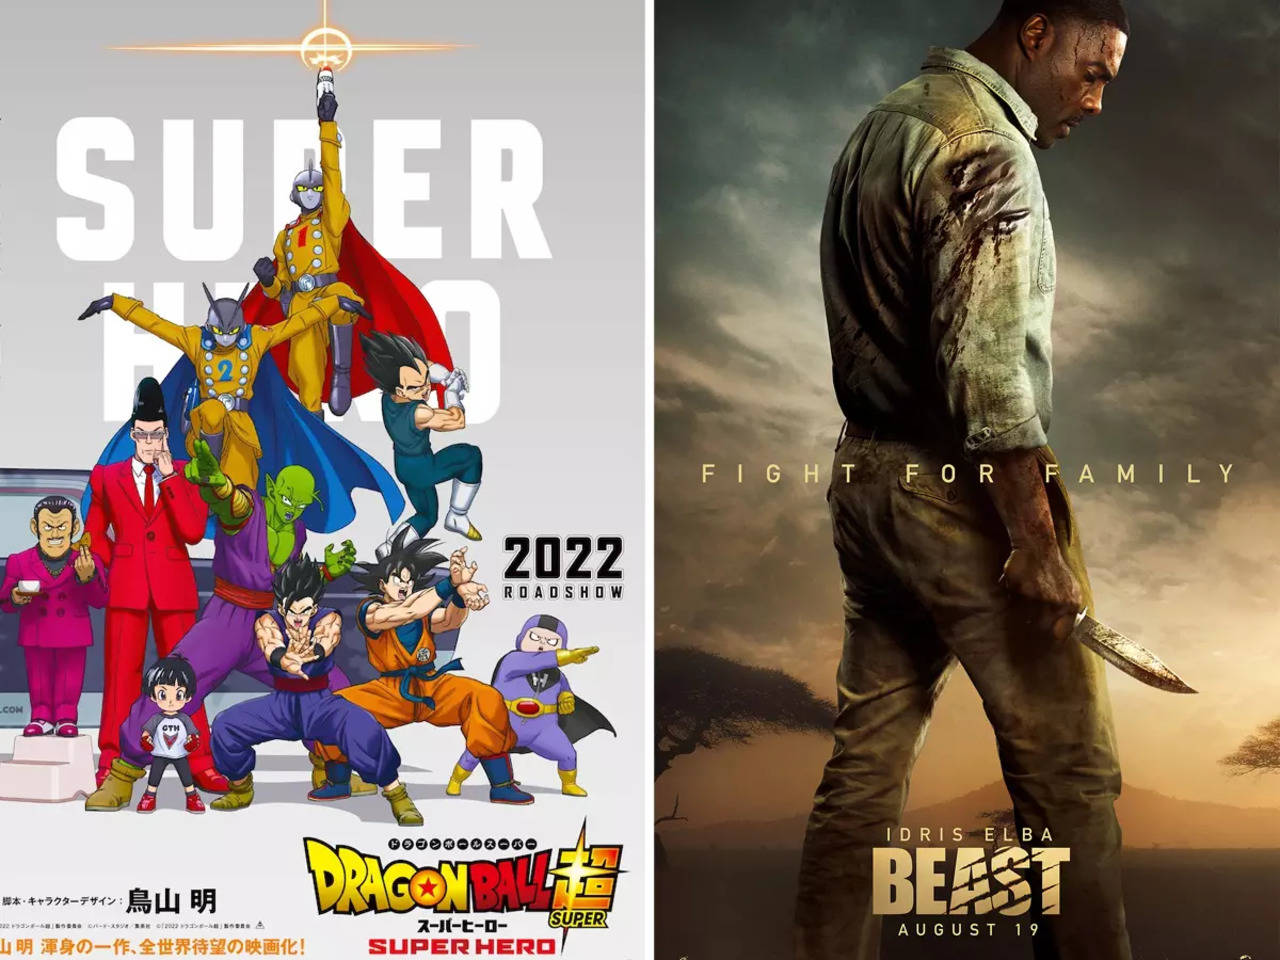 The new Dragon Ball Super movie is Dragon Ball Super: Super Hero